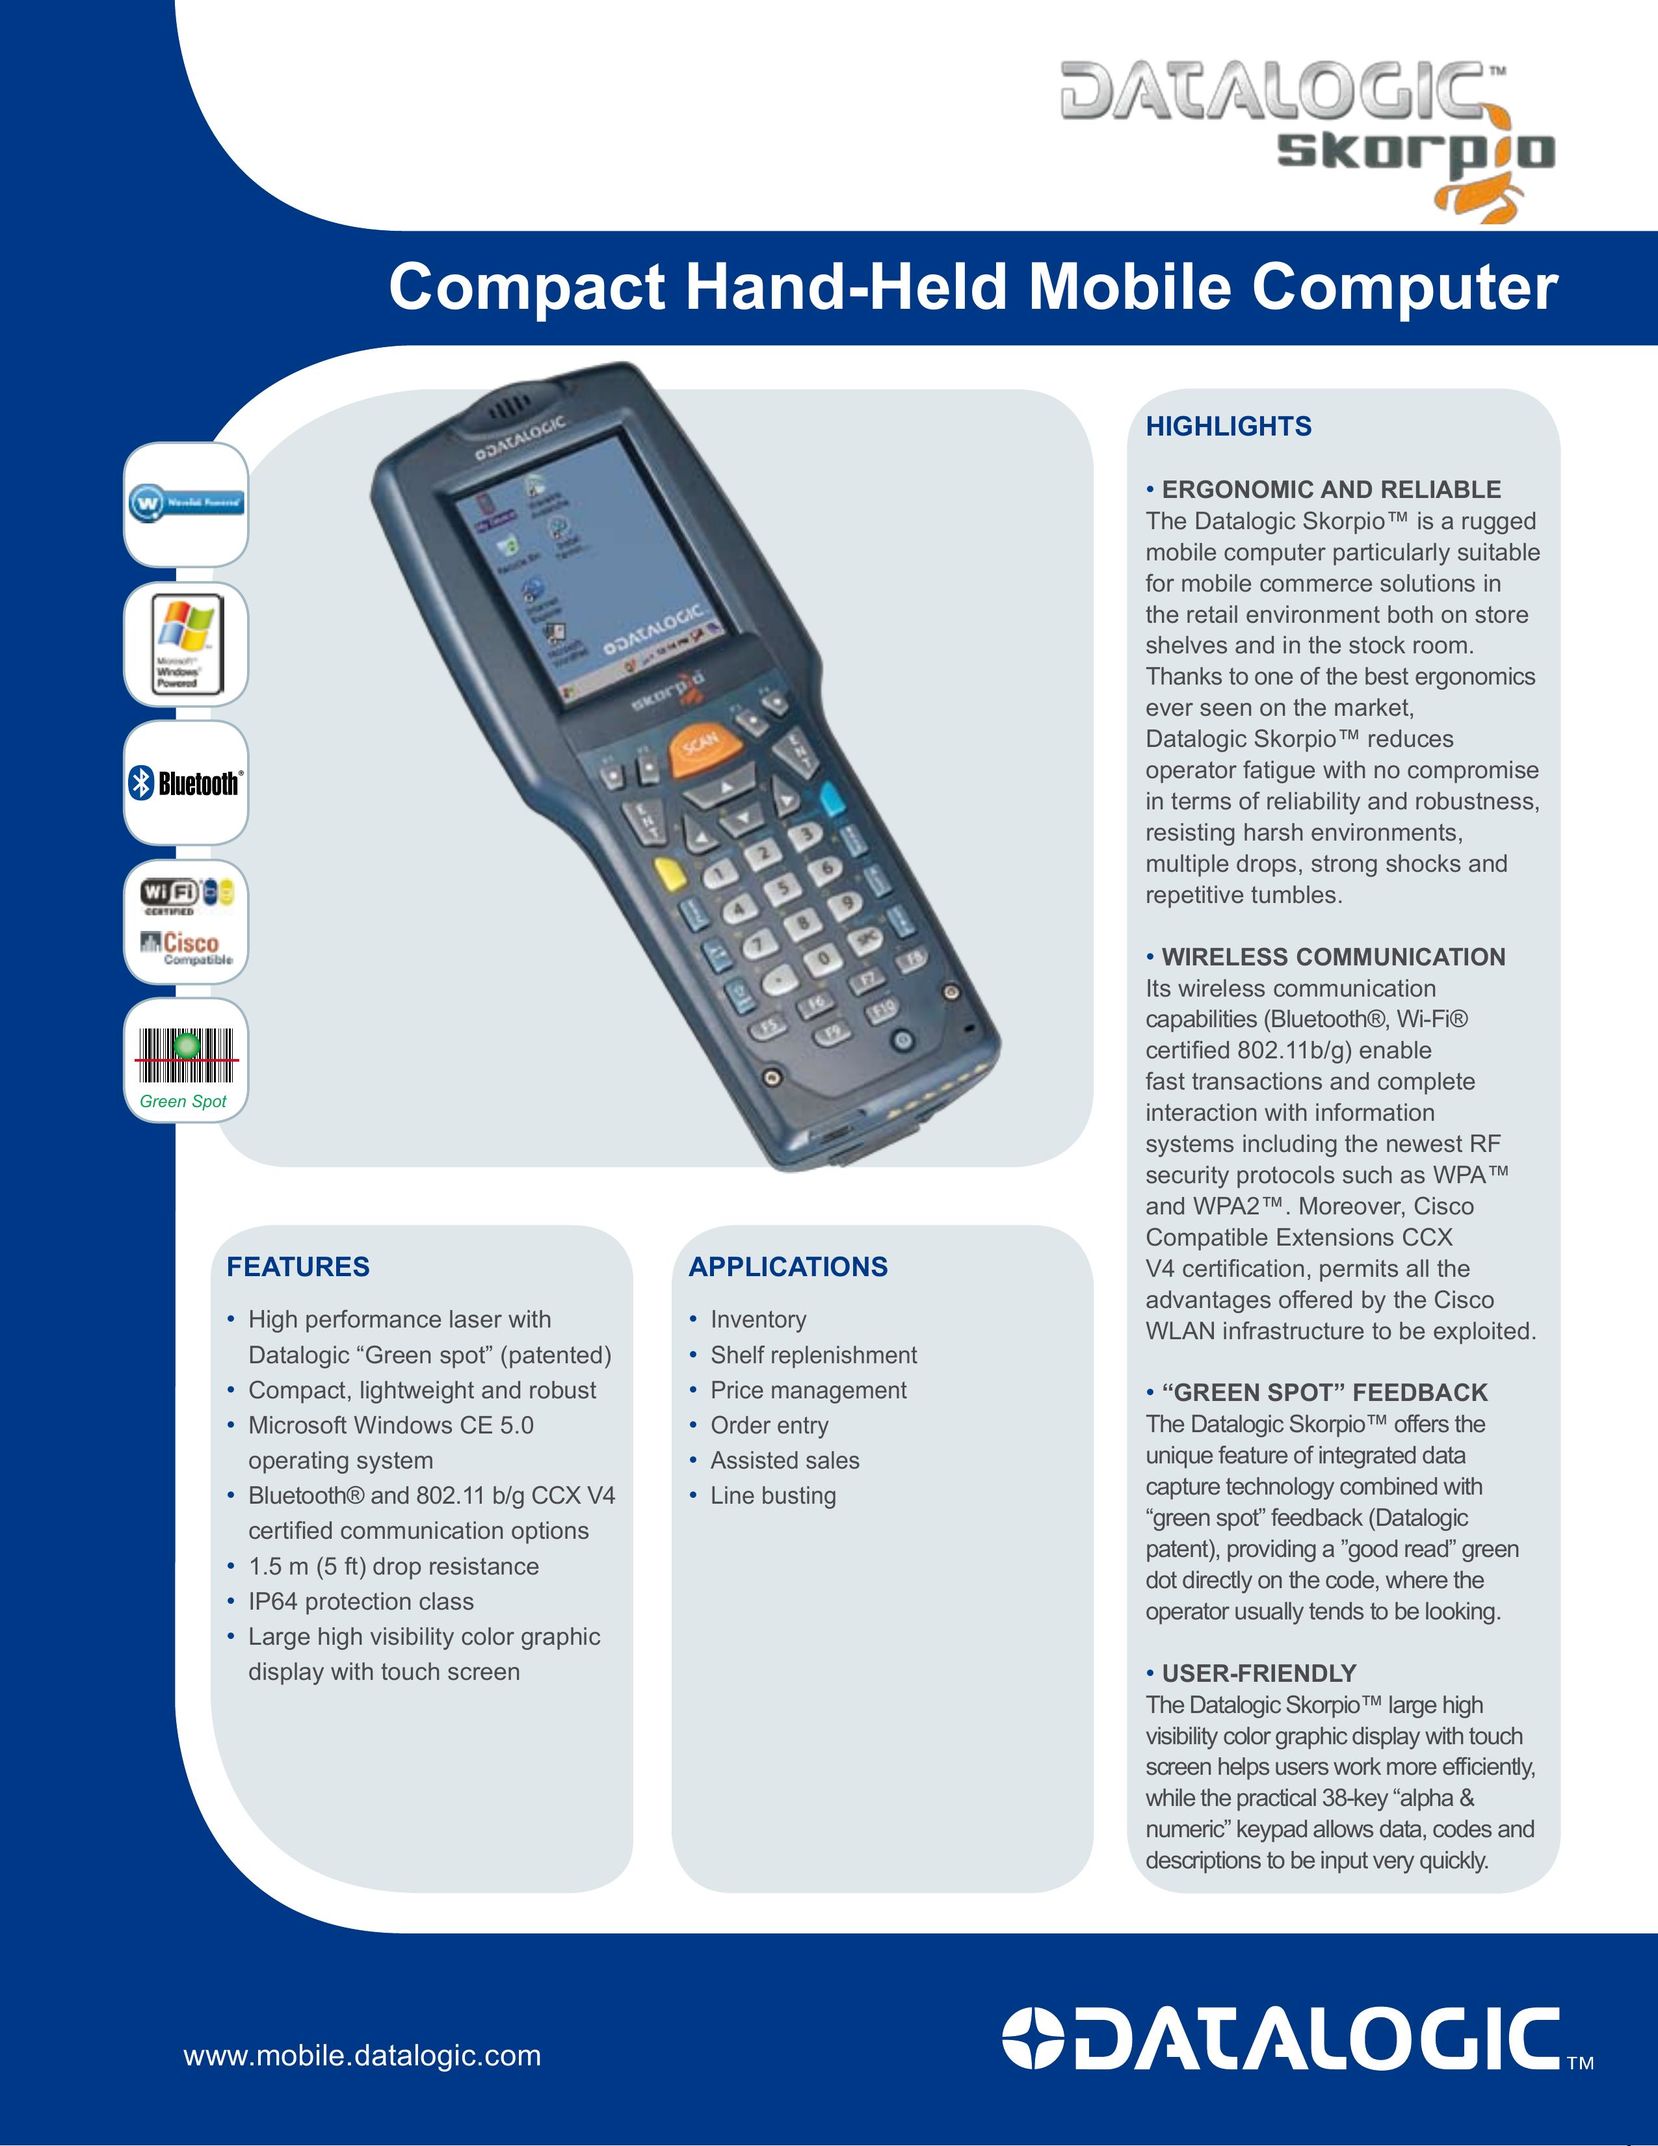 Datalogic Scanning Scorpio PDAs & Smartphones User Manual